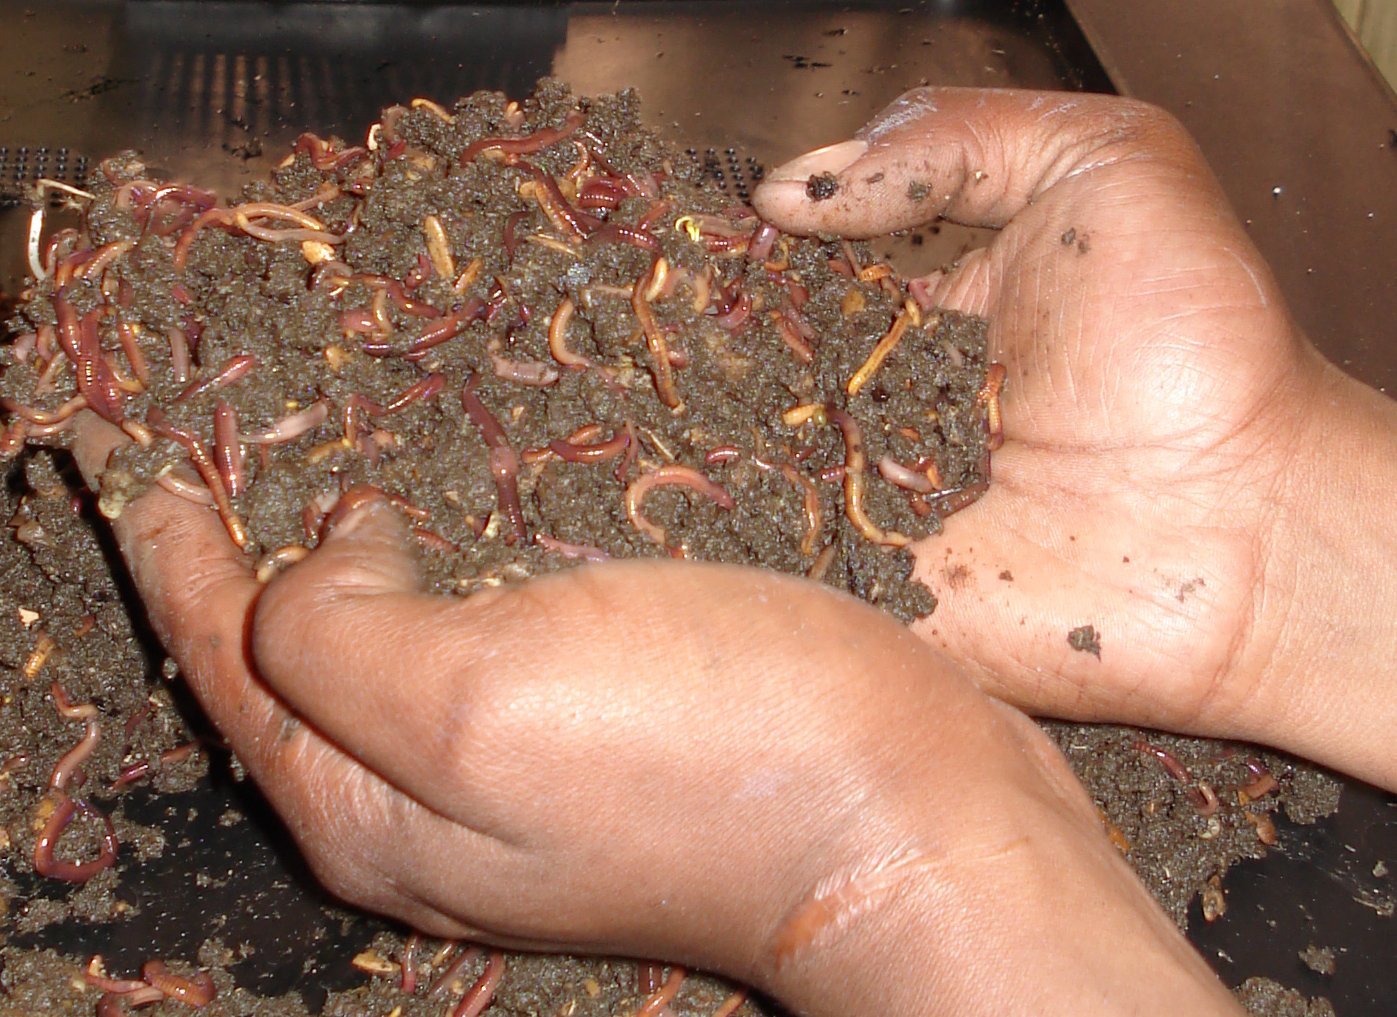 3522-hand-full-of-worms.jpg.jpg